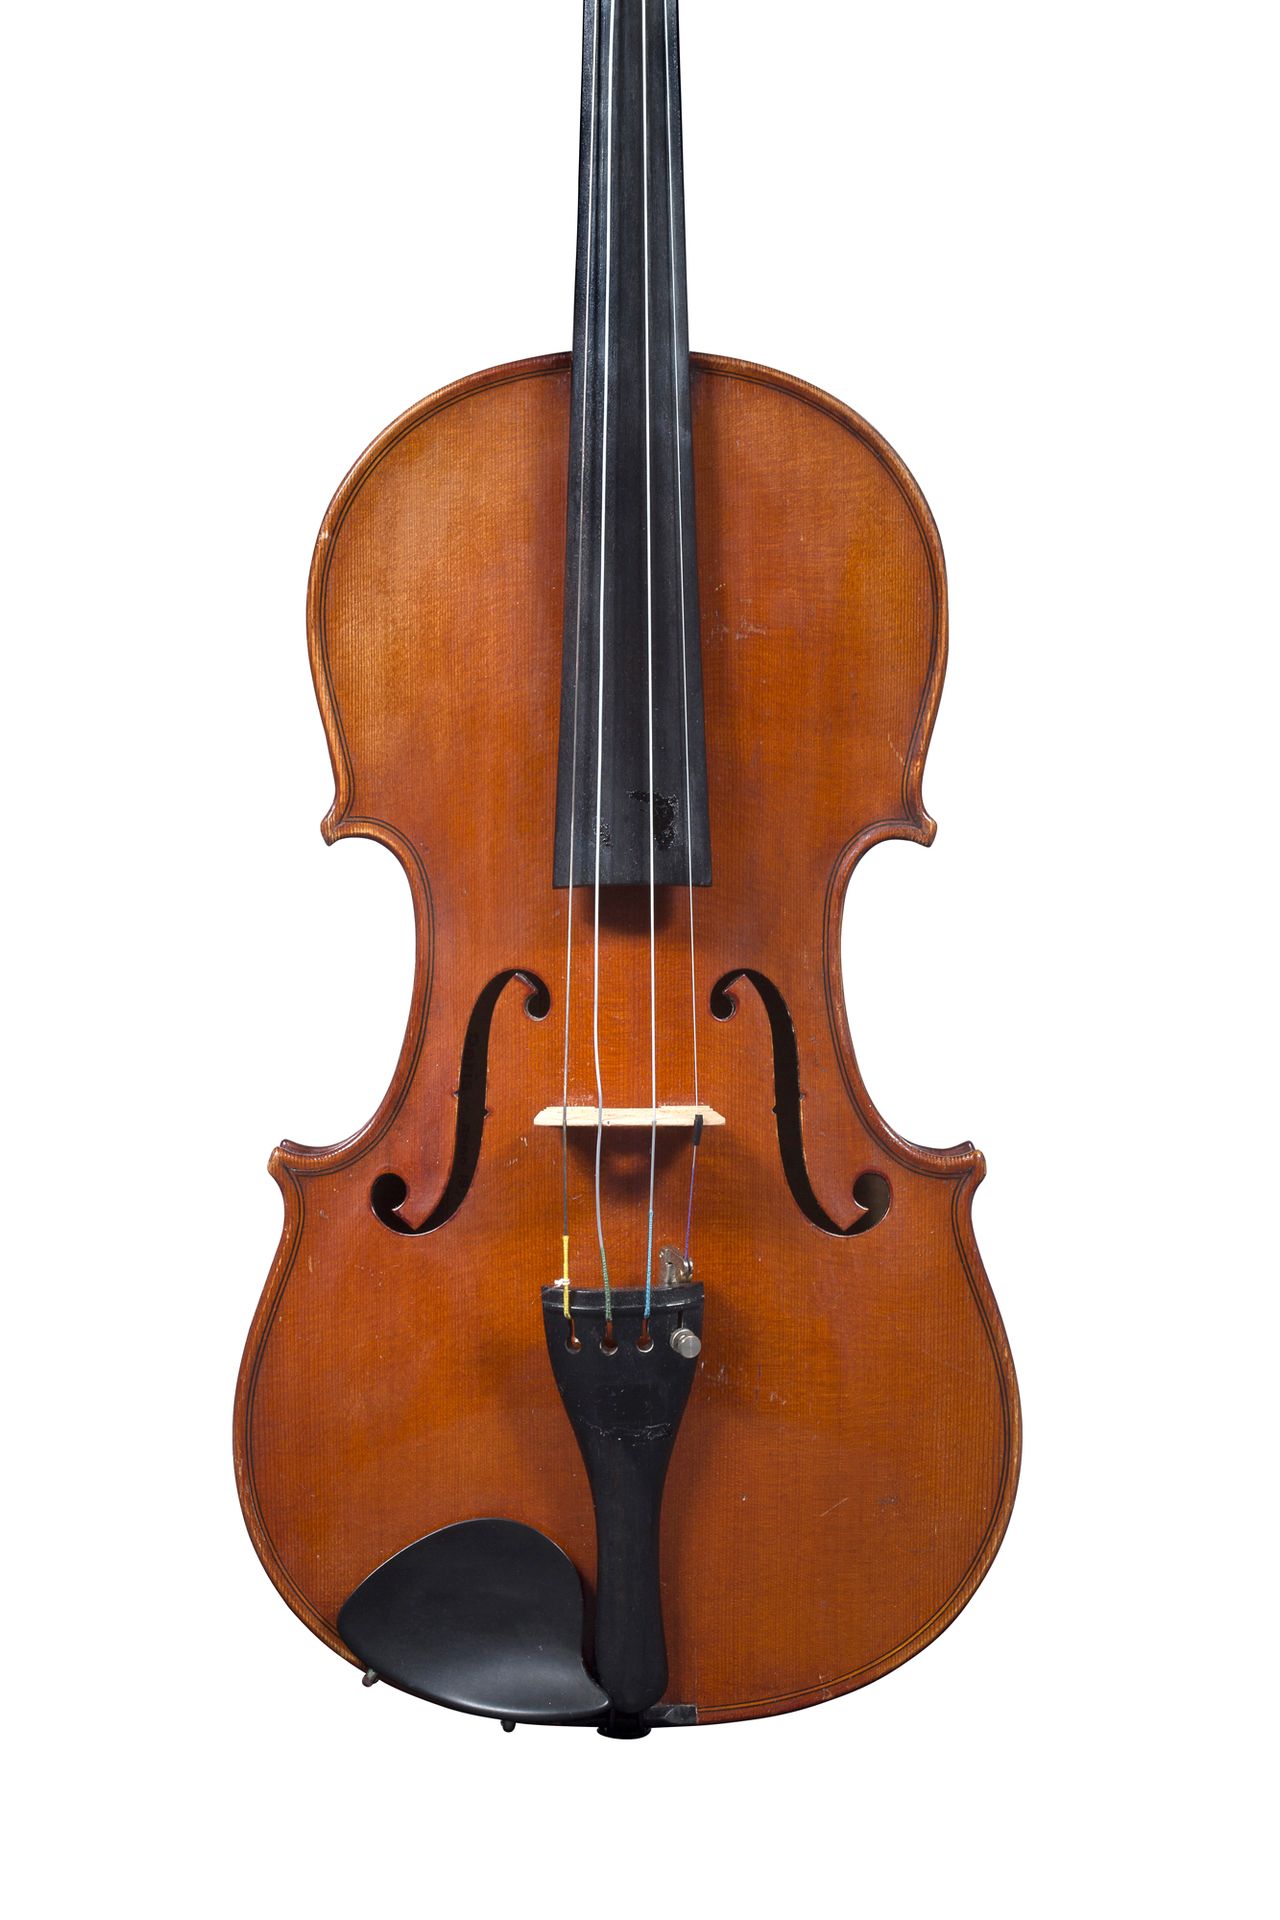 Null Violine französische Arbeit um 1900-10.
Trägt das Etikett Charotte-Millot 1&hellip;